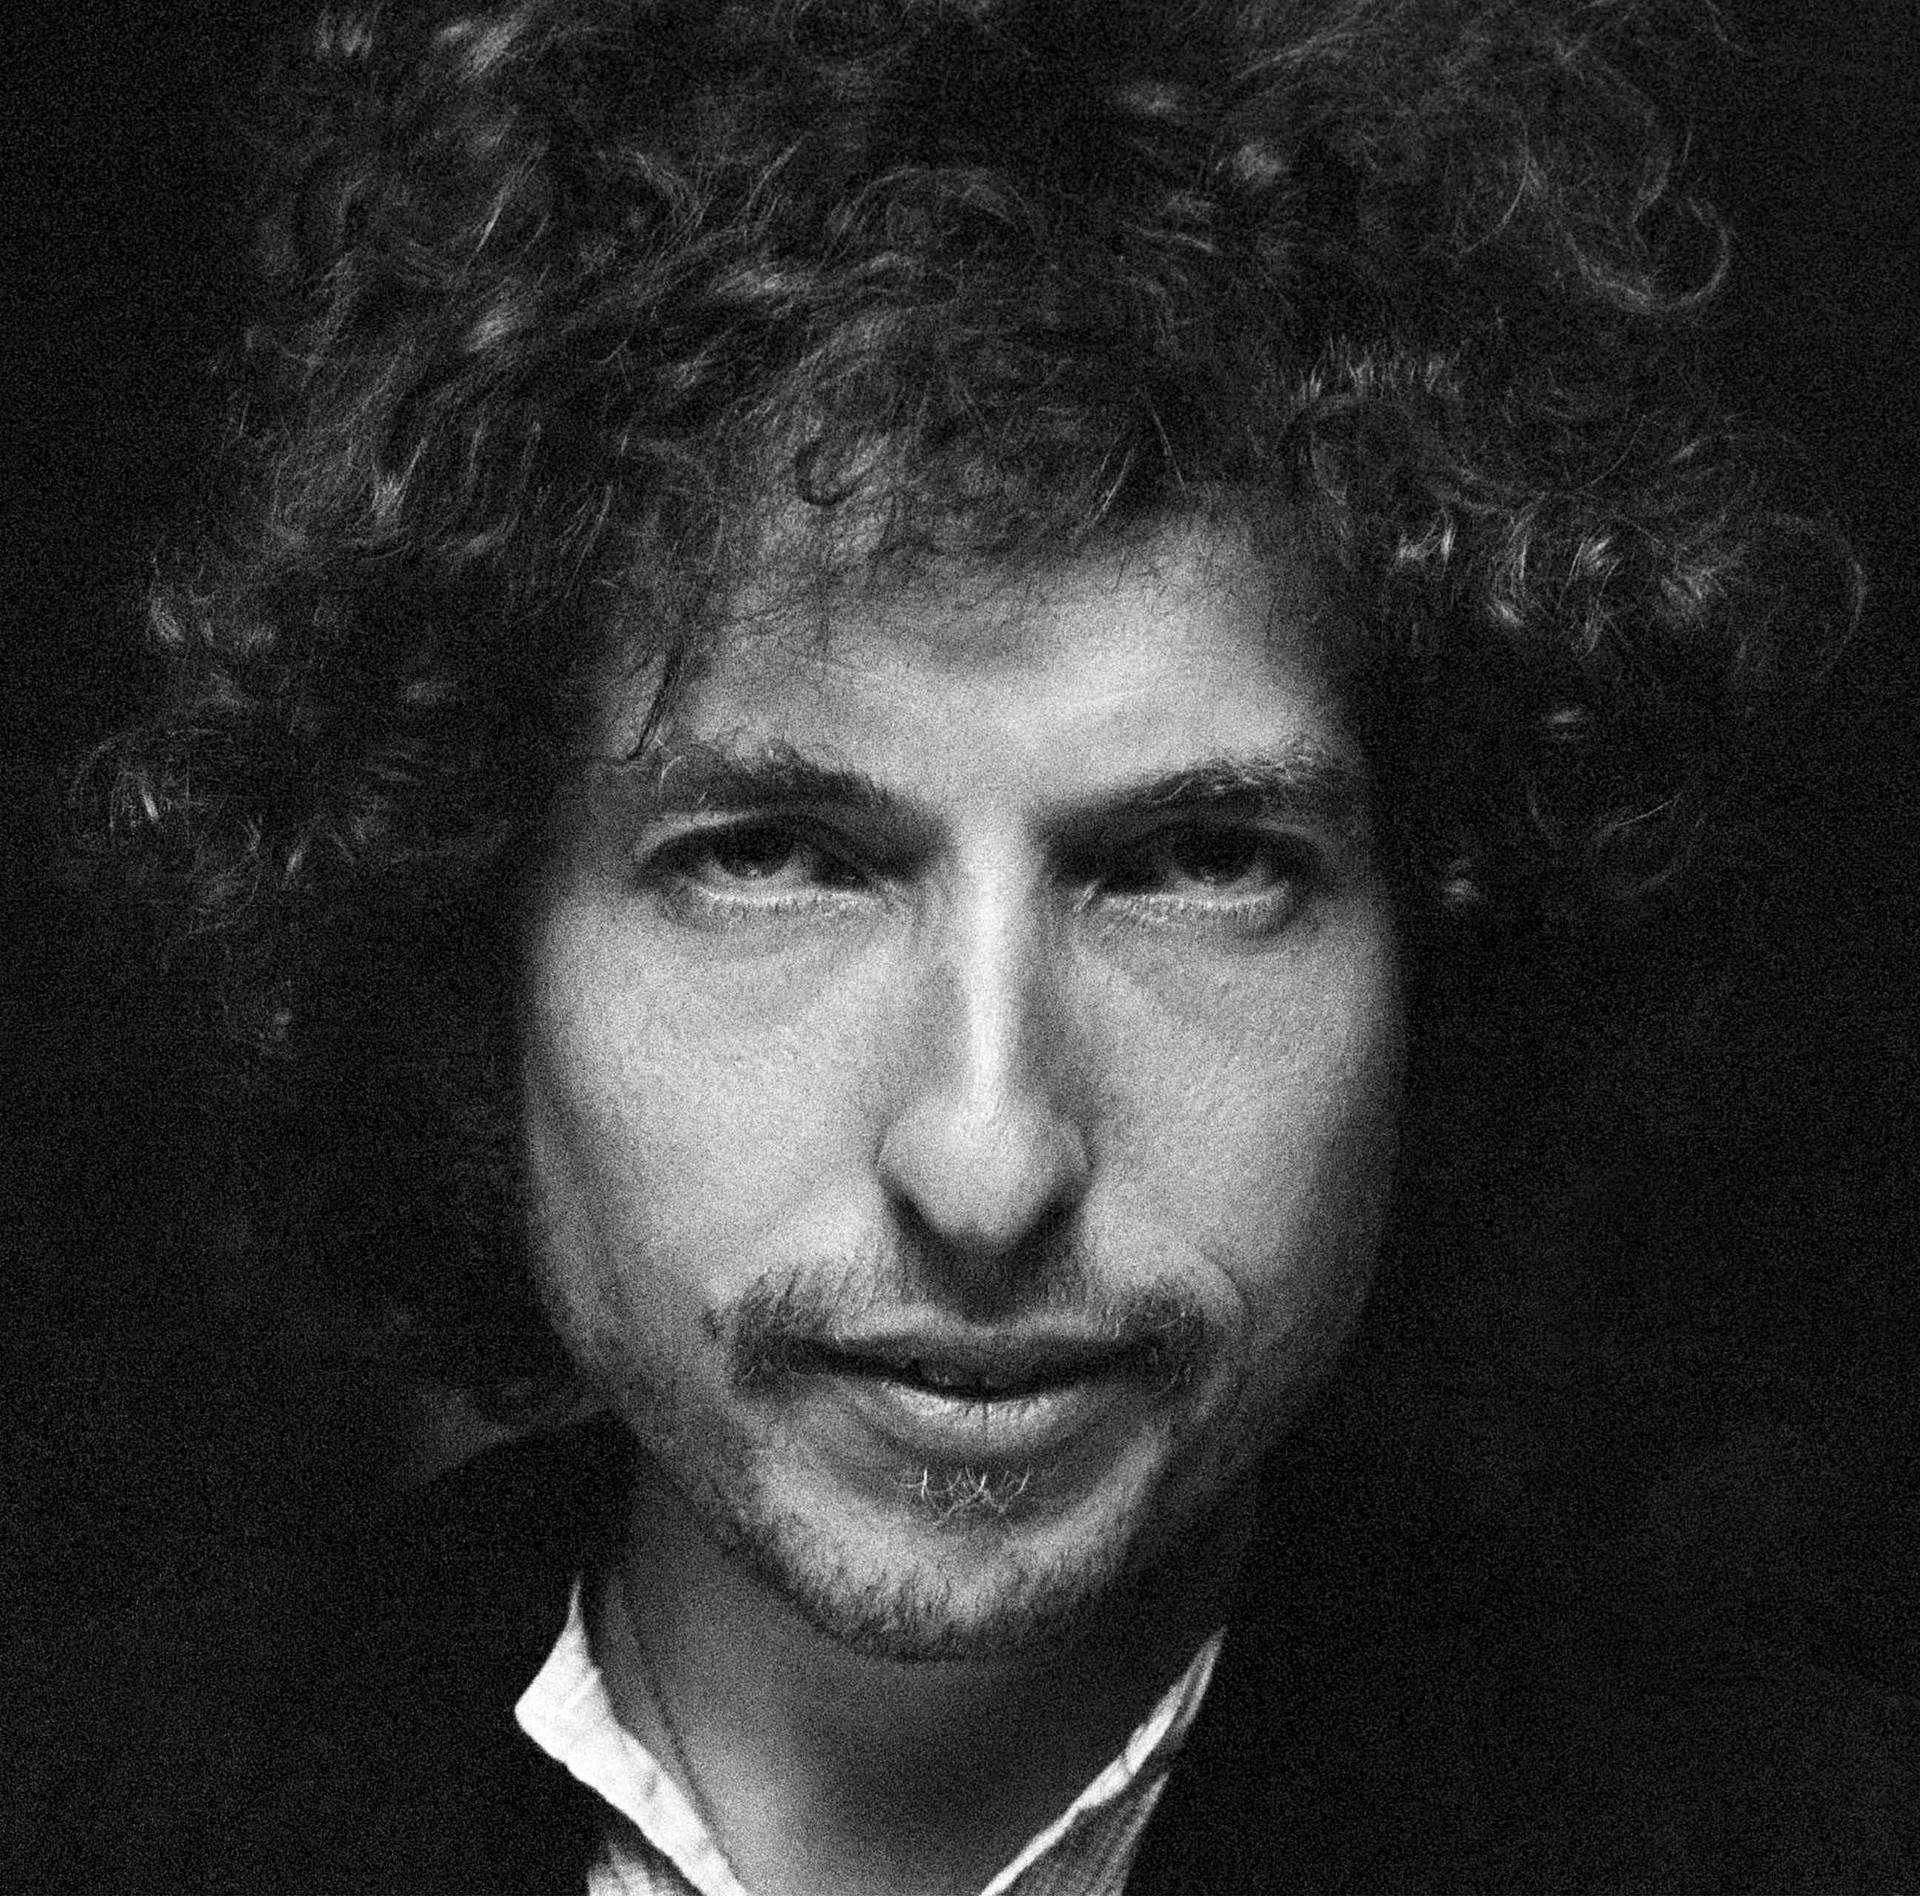 Bob Dylan Portrait Black And White Wallpaper